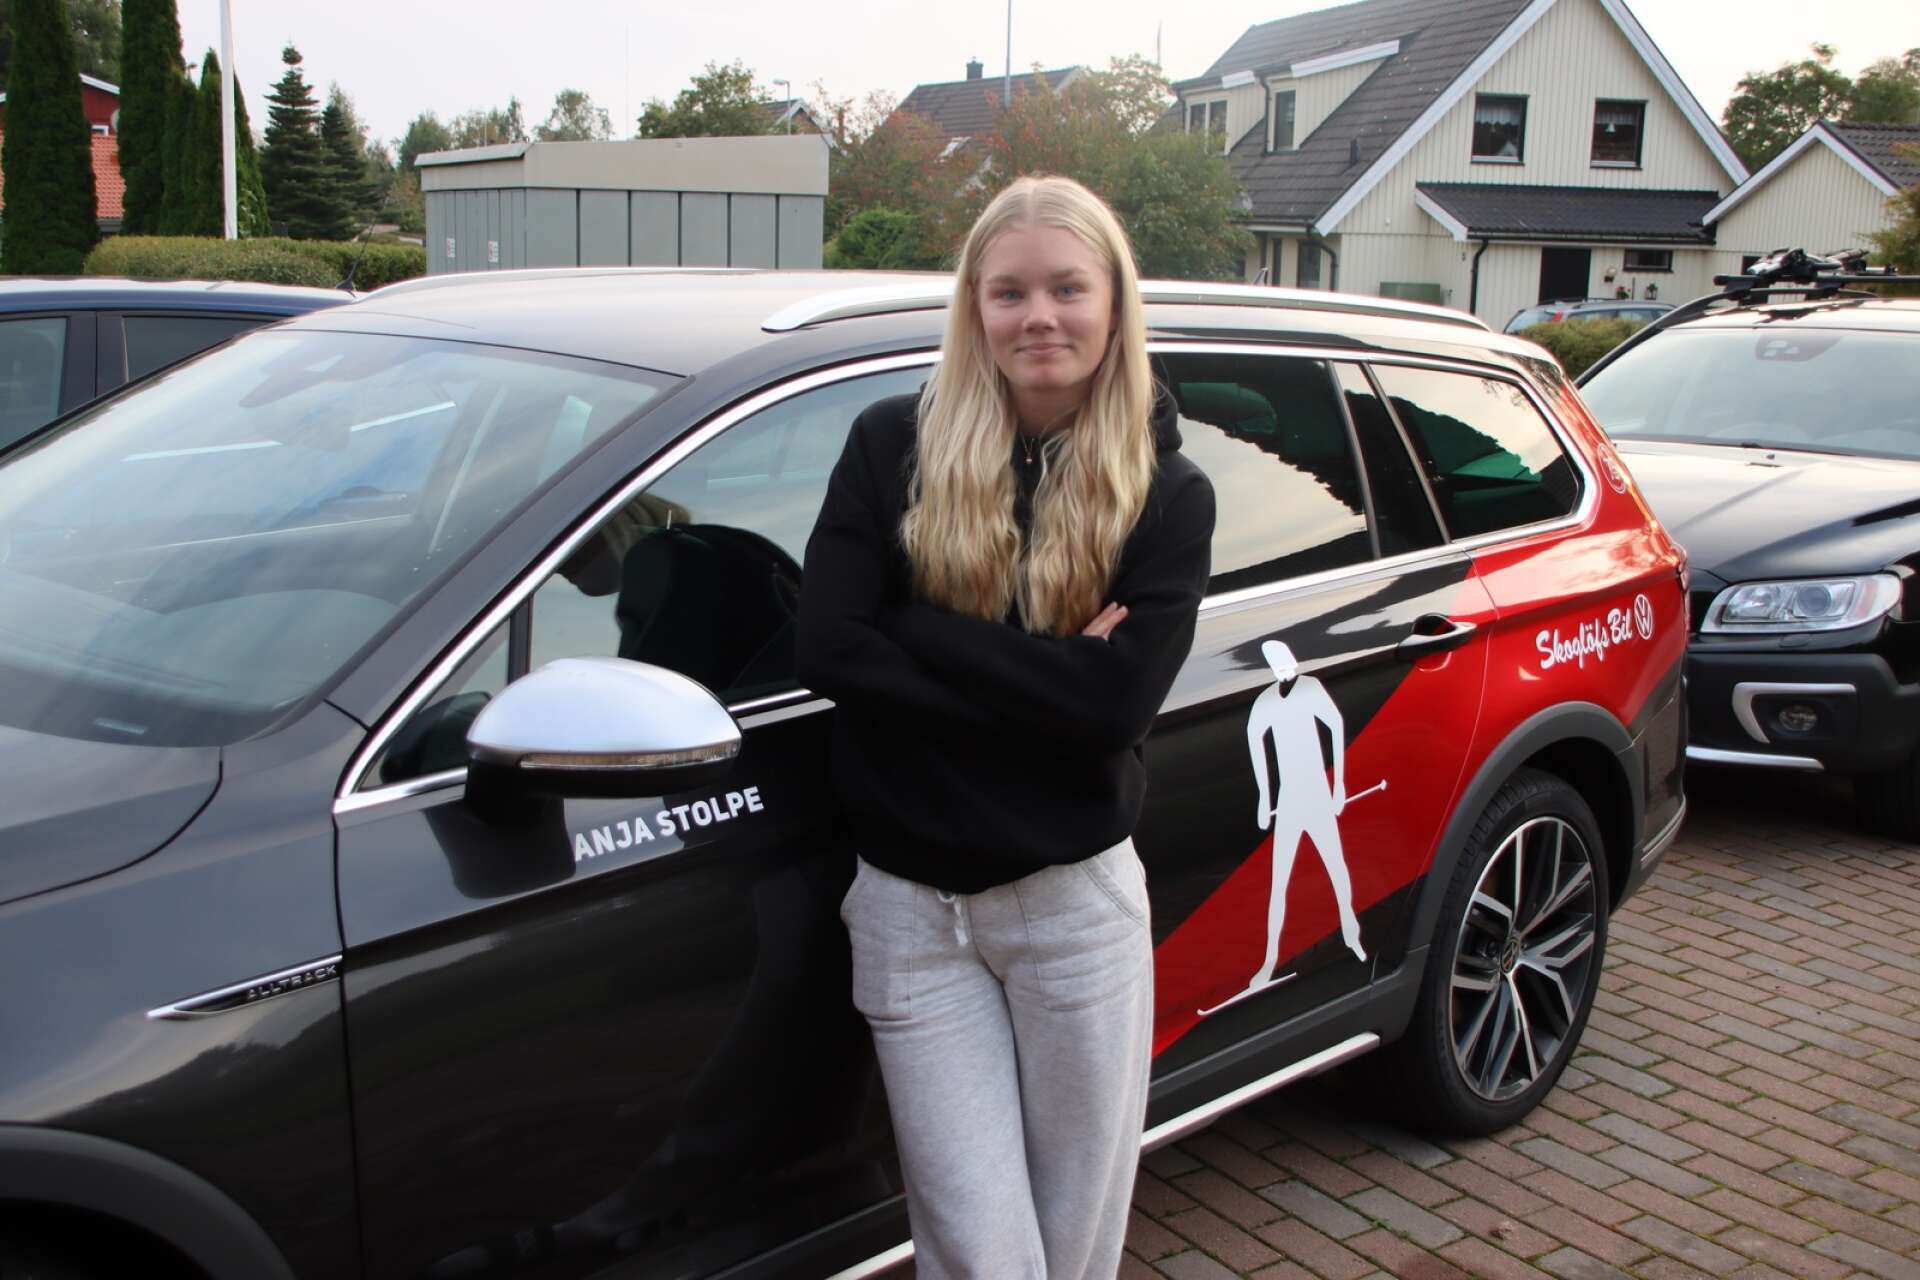 Utöver alla förmåner genom Team 157 har Anja också blivit sponsrad med en egen bil från en firma i Kristinehamn.